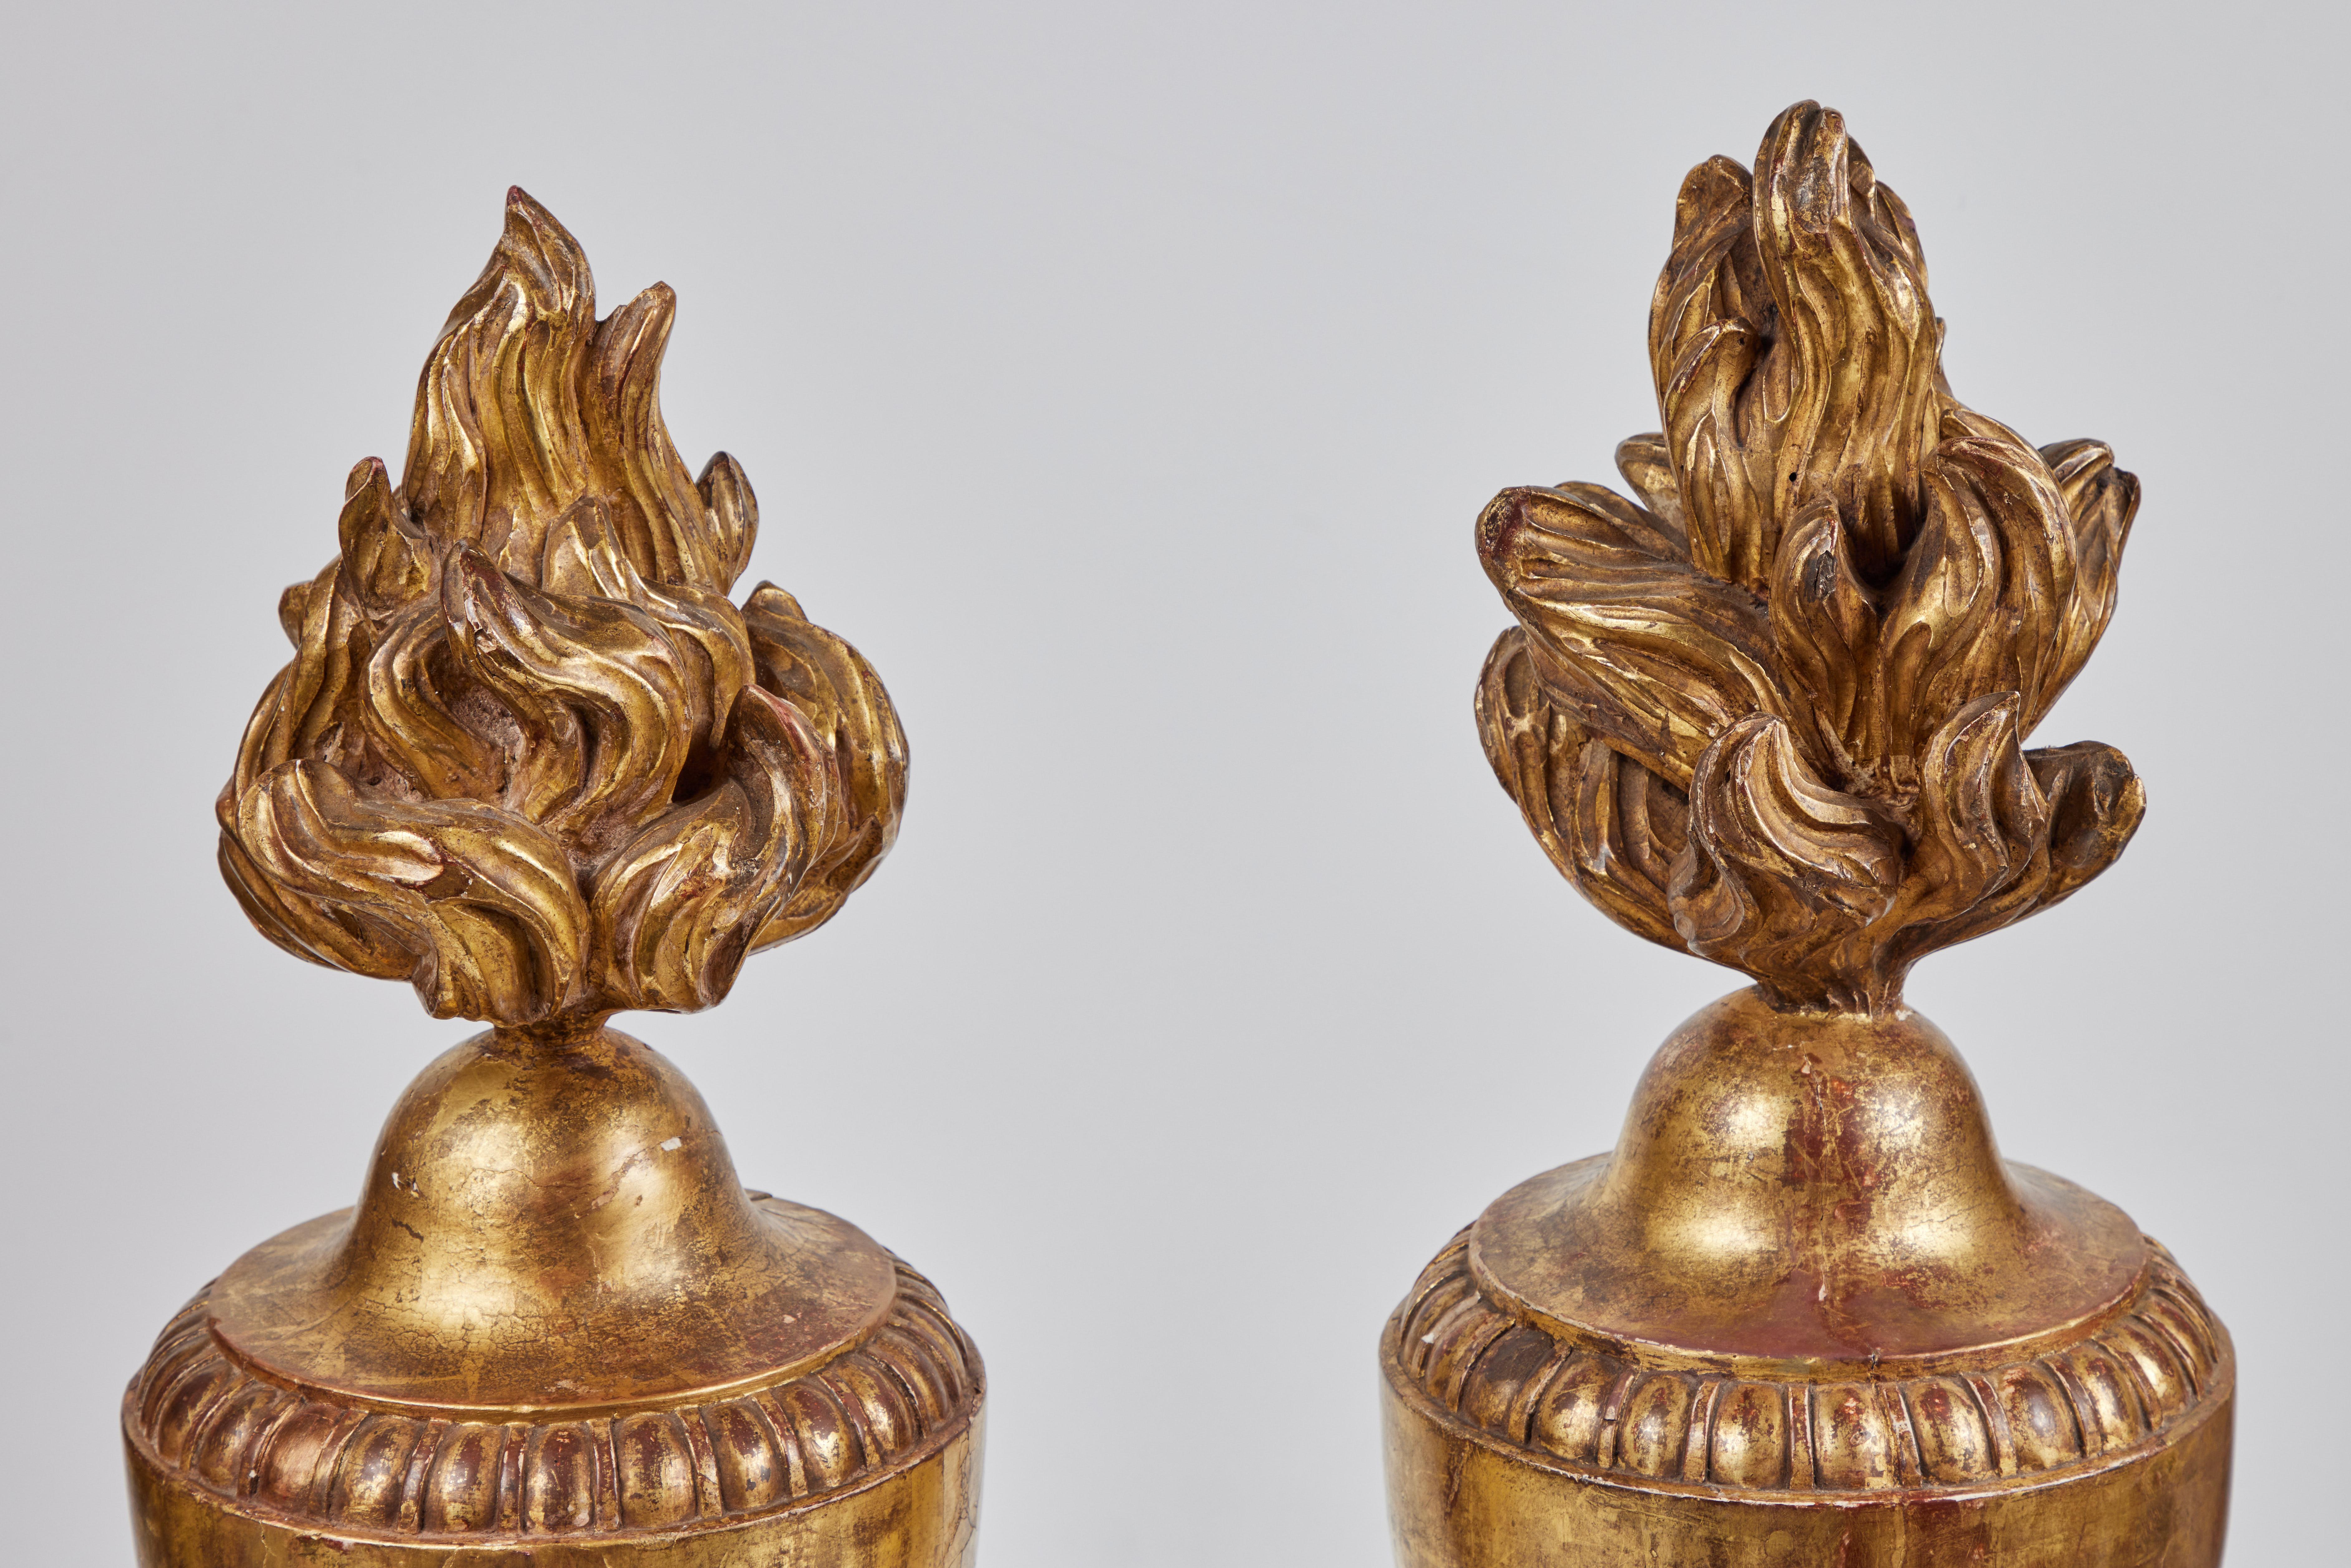 Une paire spectaculaire de fleurons de balustrade en forme d'urne, sculptés à la main, gessés et dorés à l'or fin 22k, surmontés de formes de flammes. Chacune repose sur un pied effilé avec un ornement en relief en forme de perle.